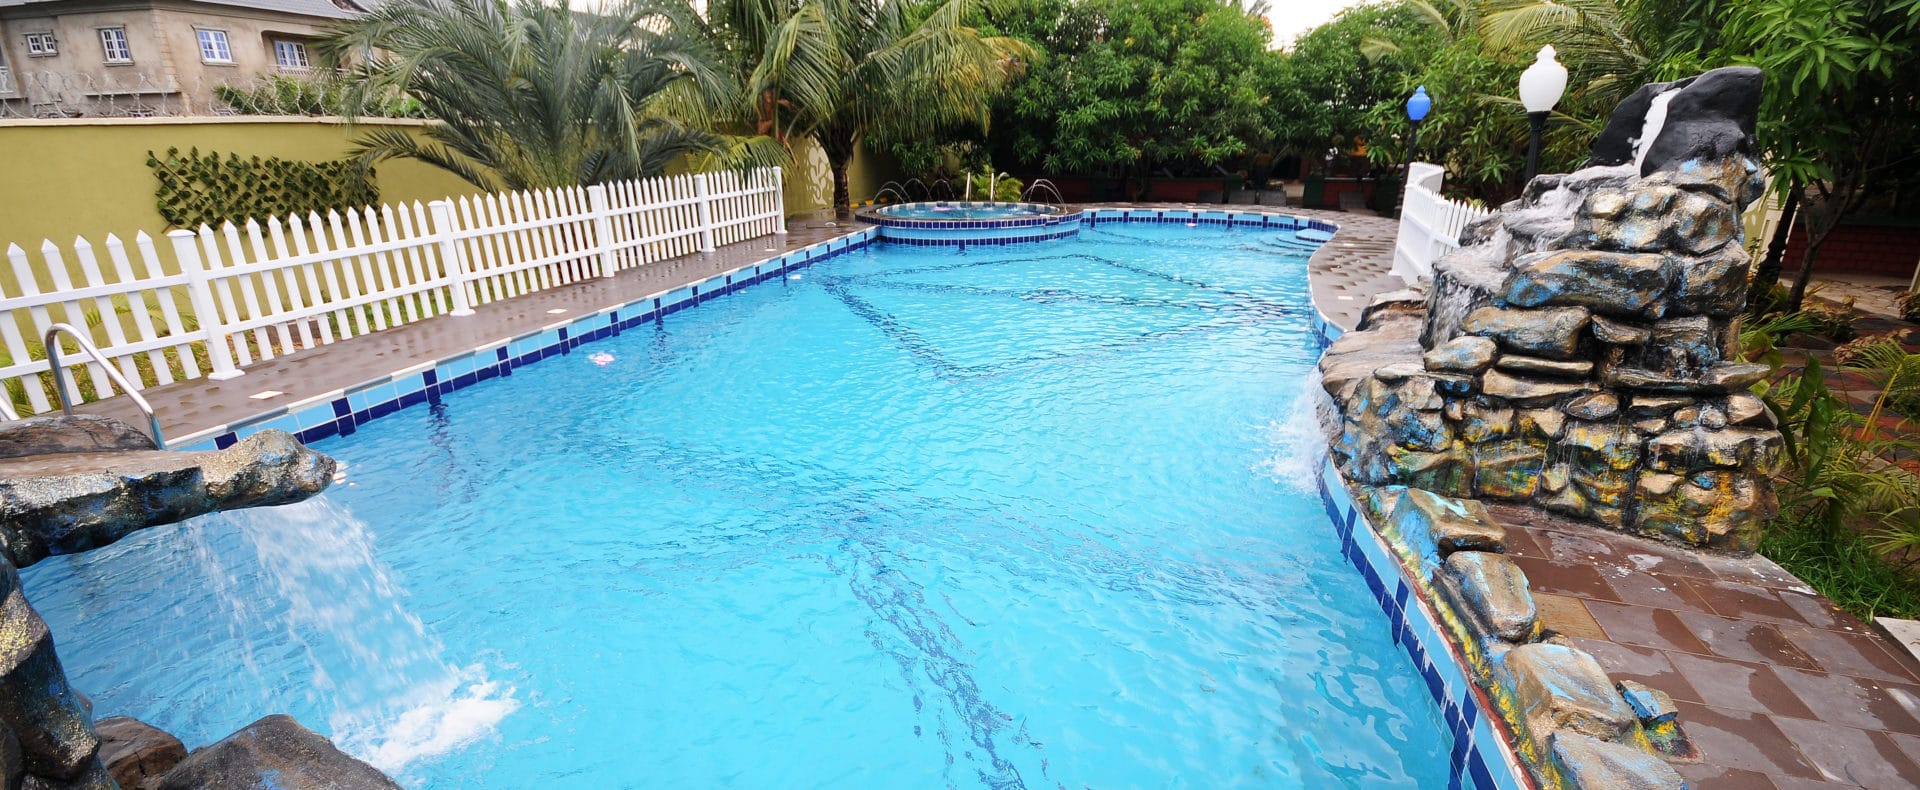 Hotel Resort Exquisite Suite In Lagos Nigeria